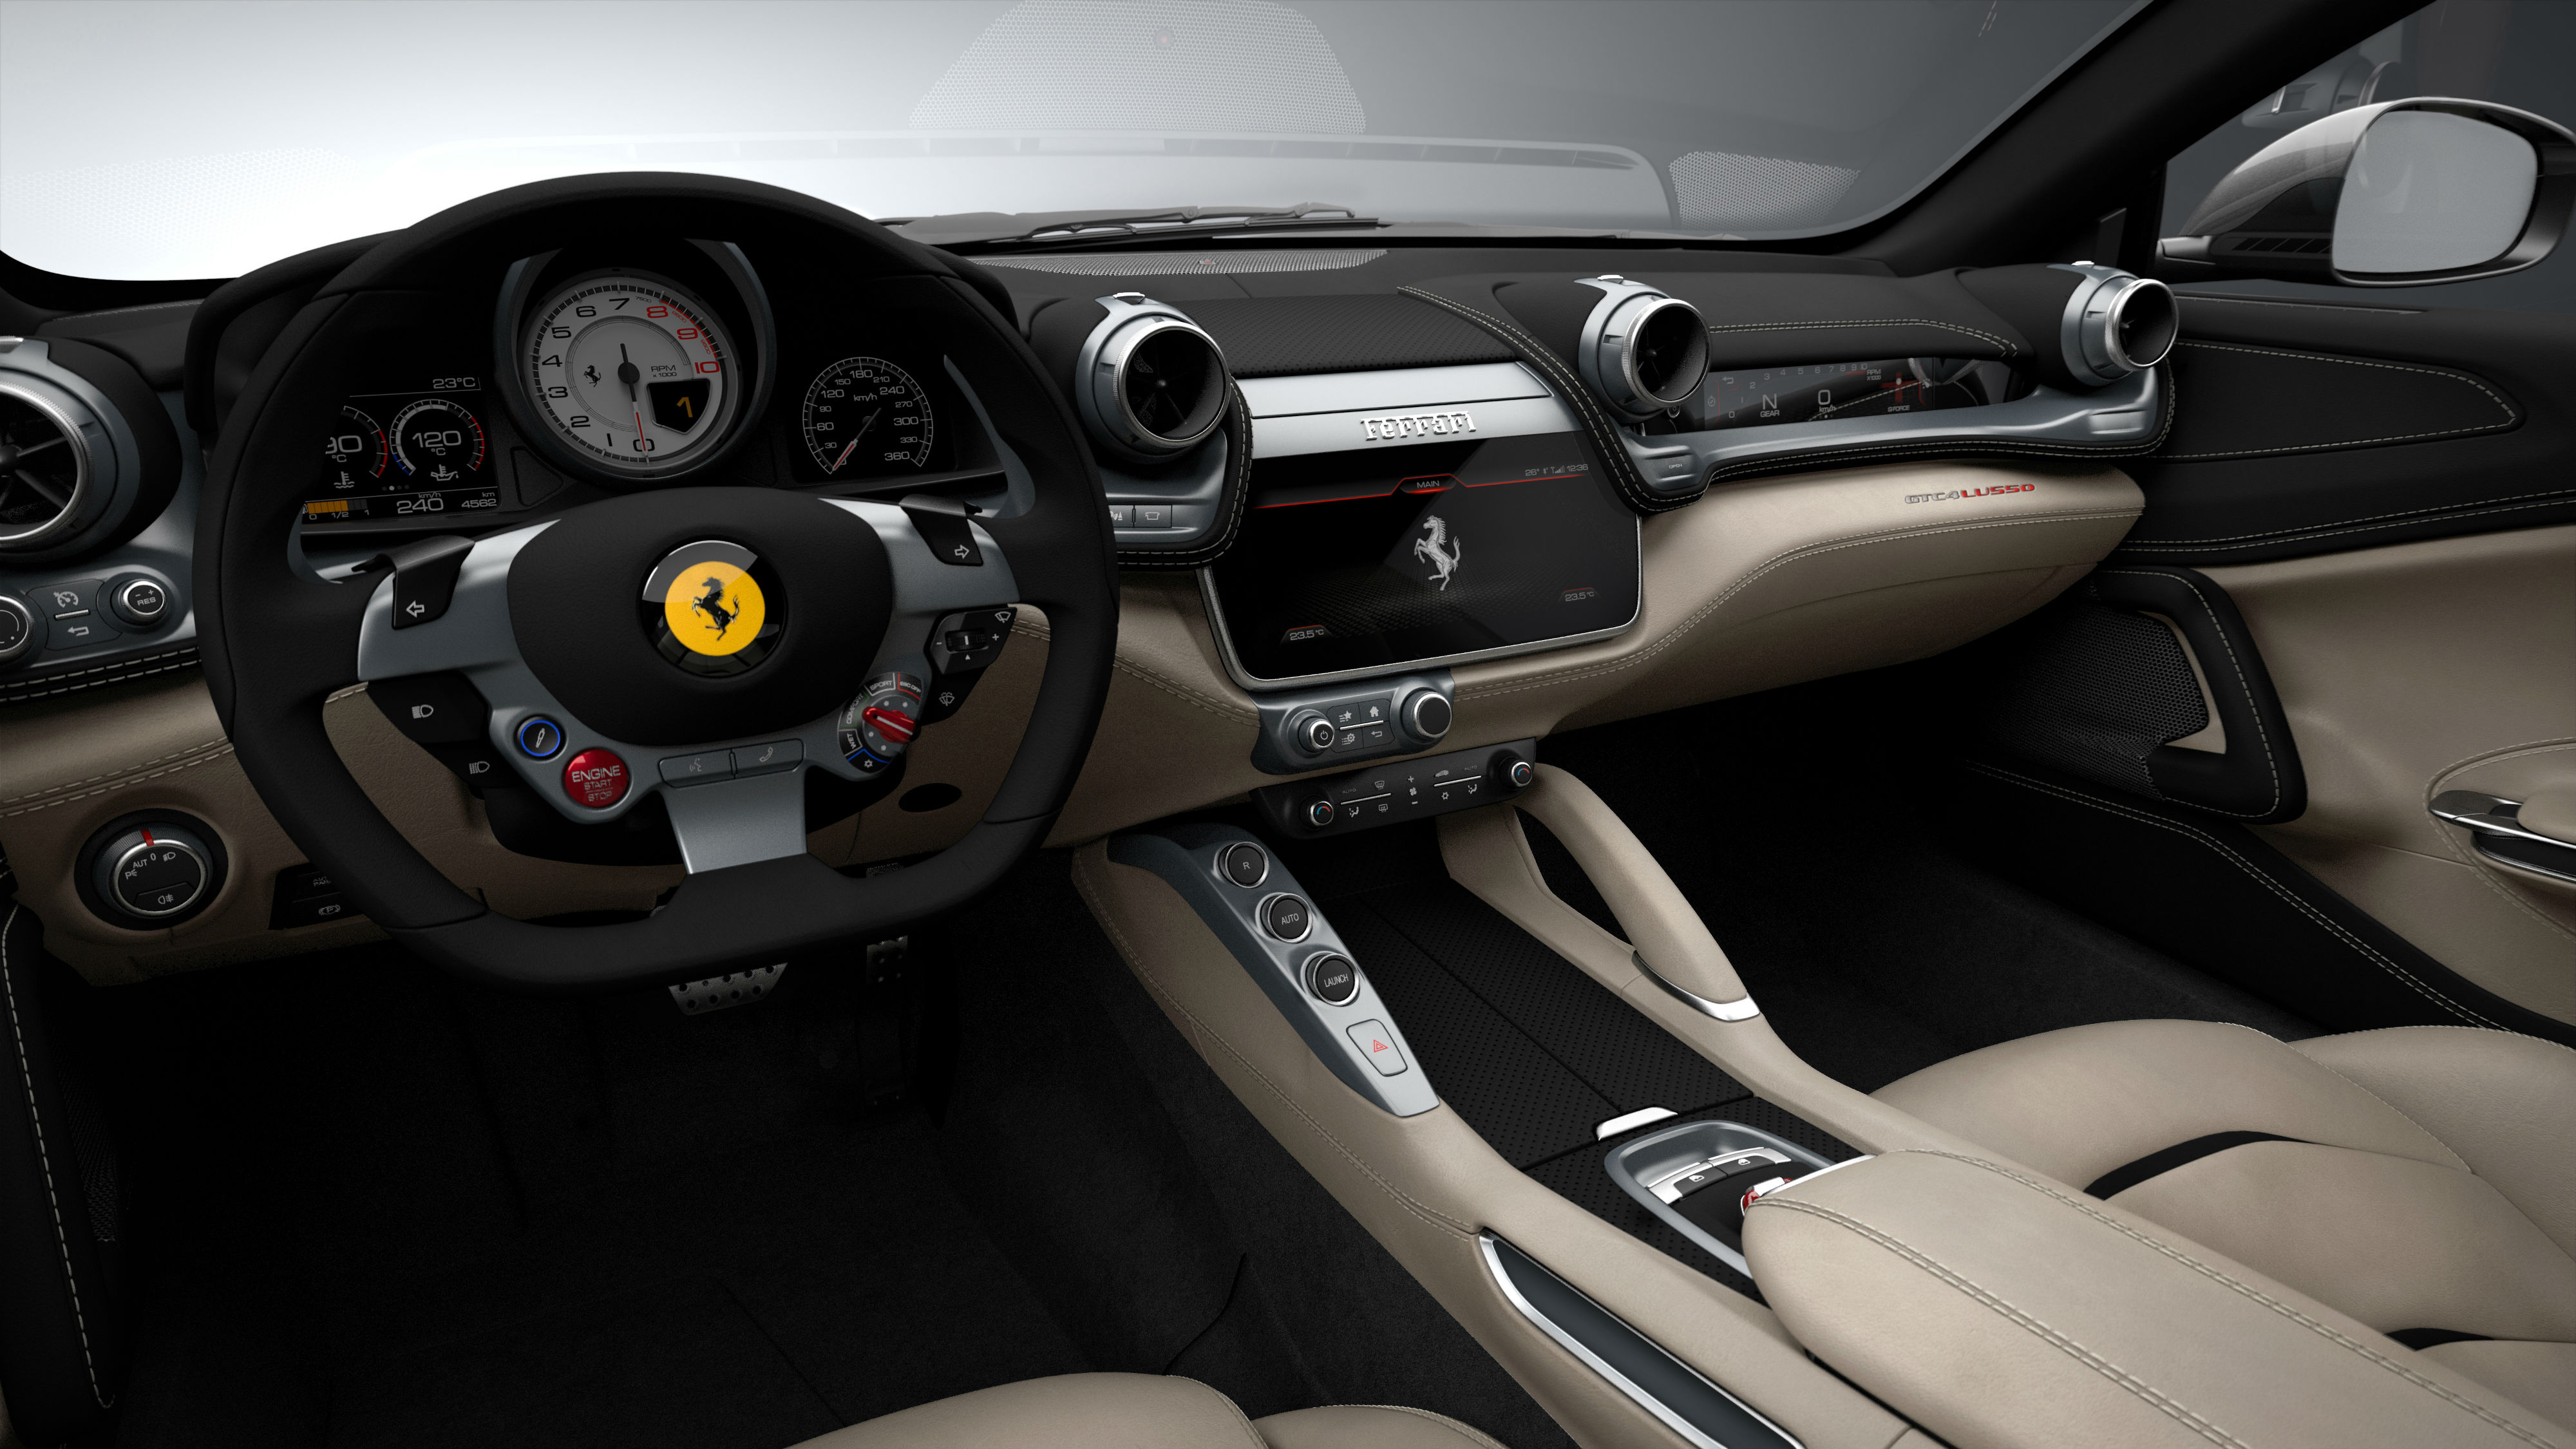 Inside the 2016 Ferrari GTC4Lusso